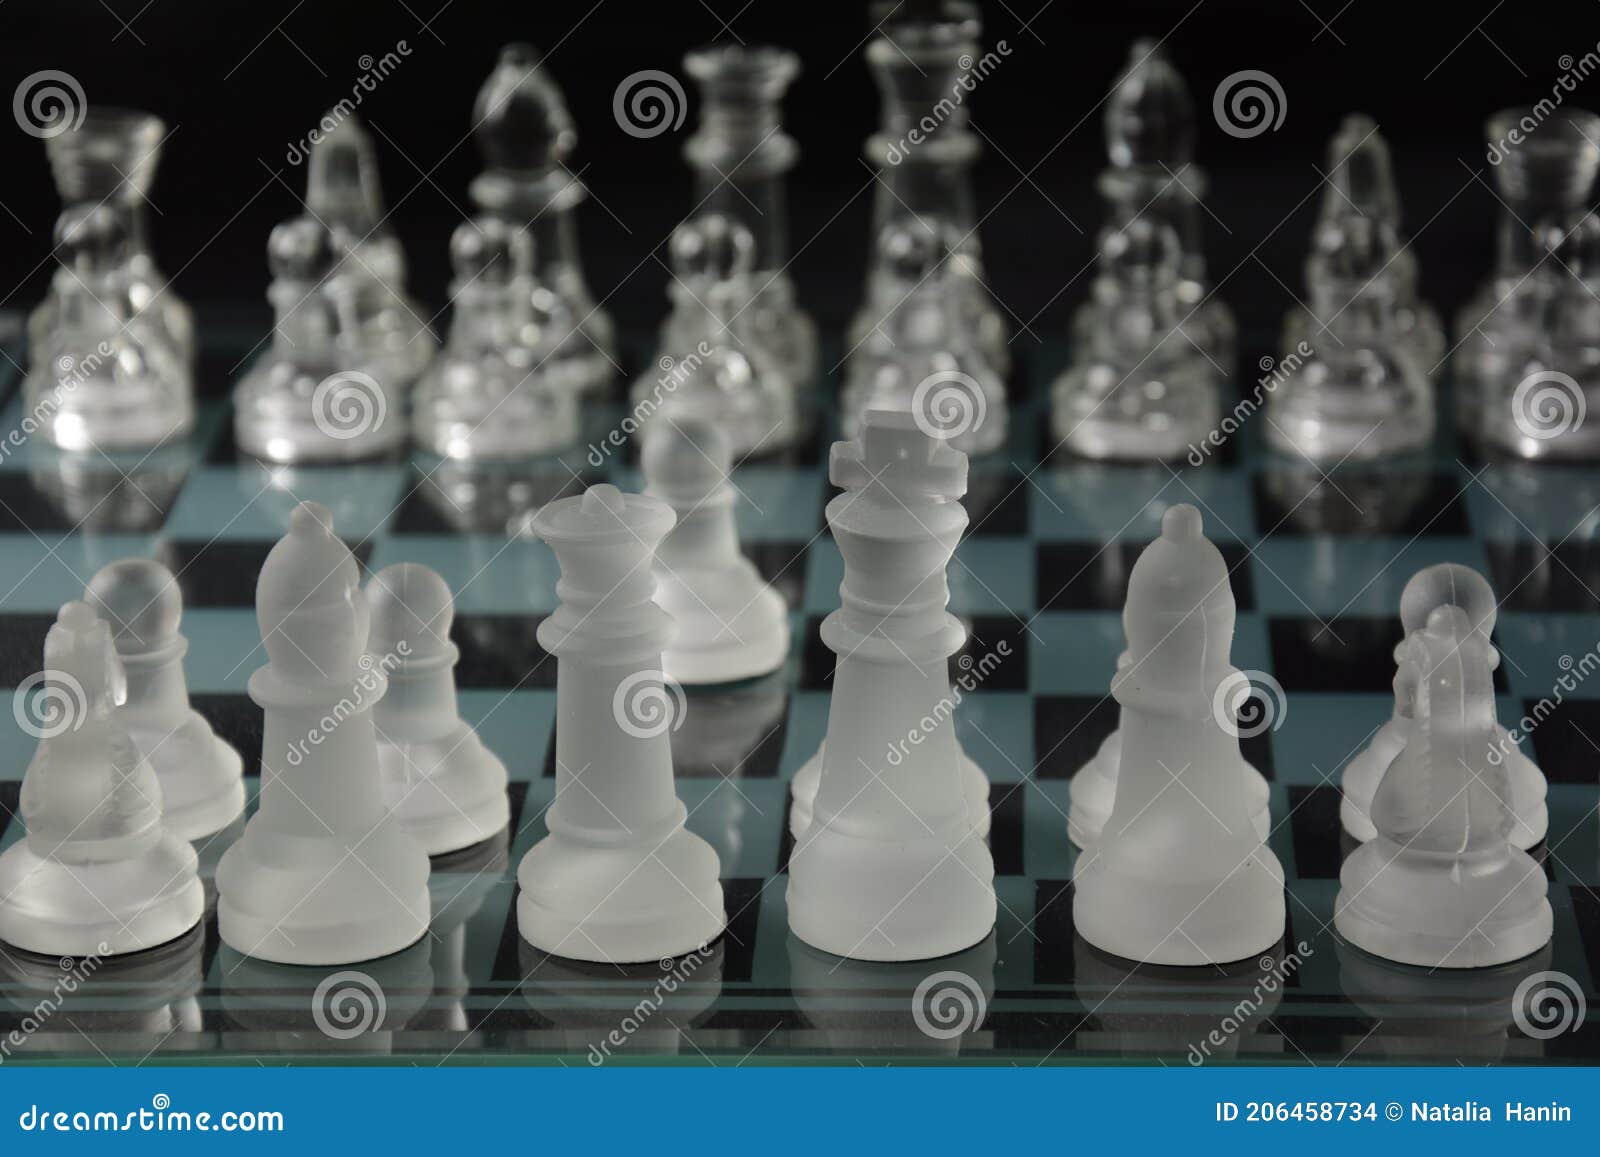 Um tabuleiro de xadrez com tampo de vidro transparente e a palavra xadrez